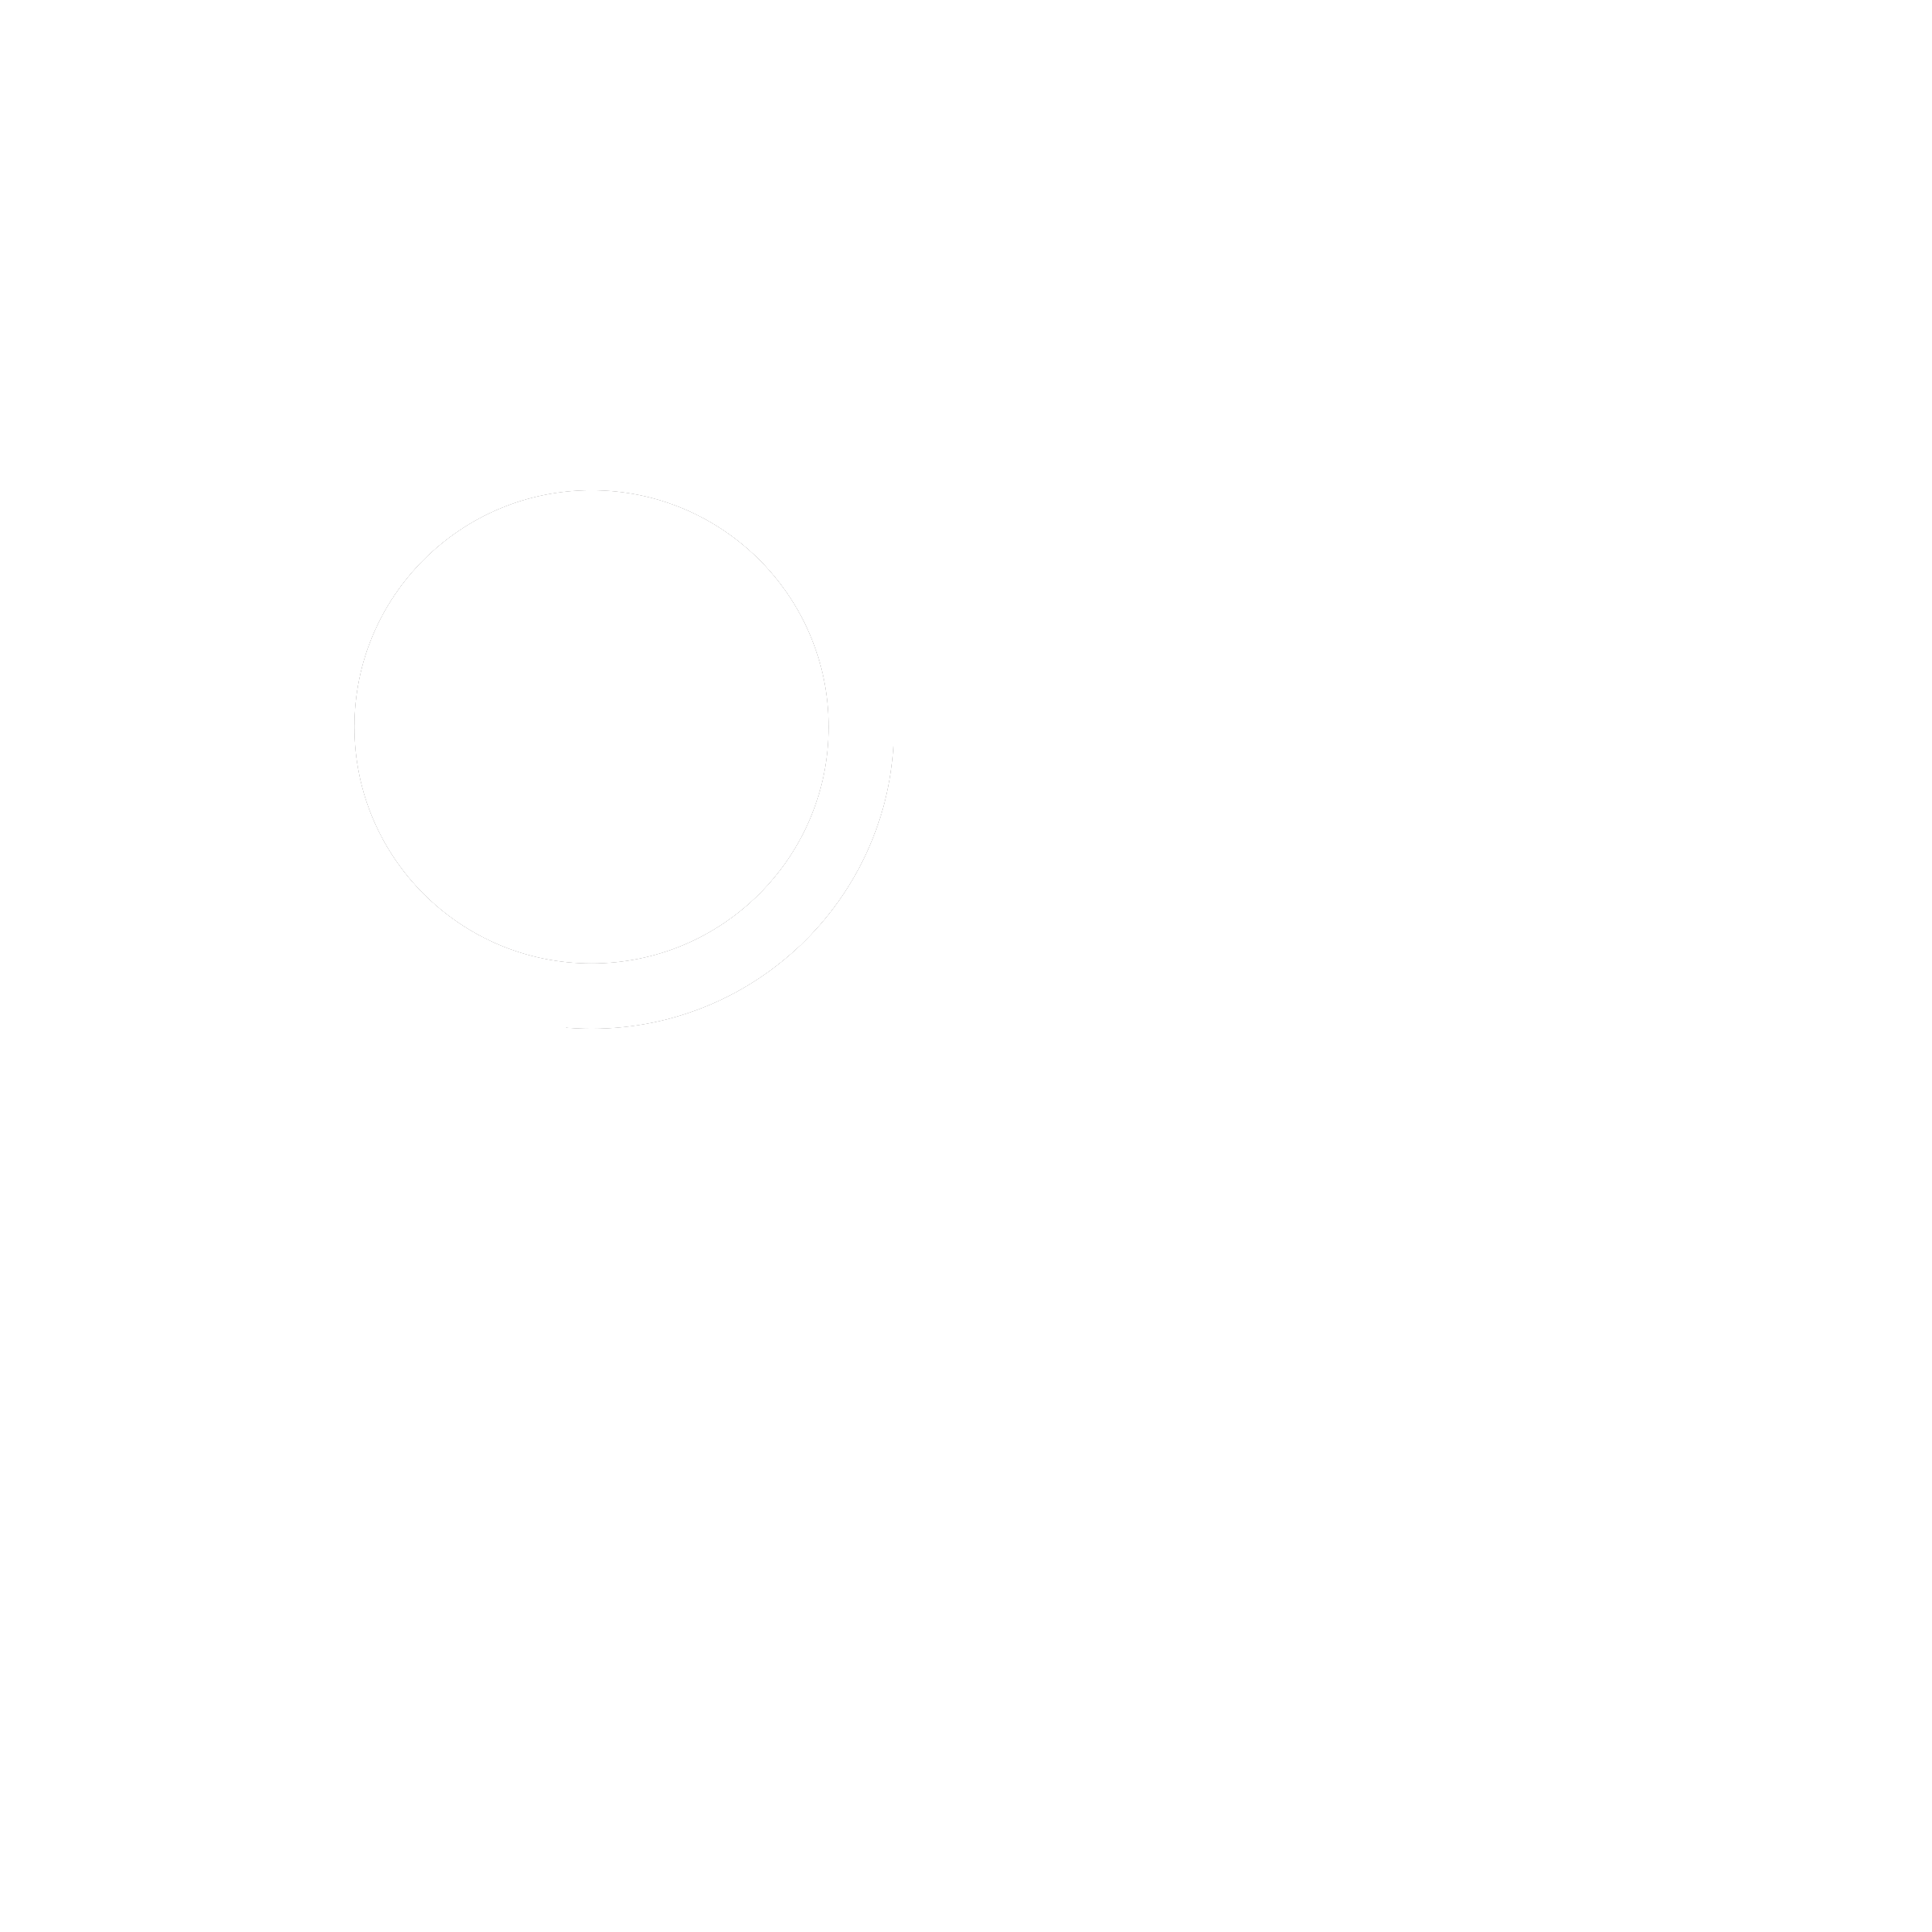 ONE HOPE